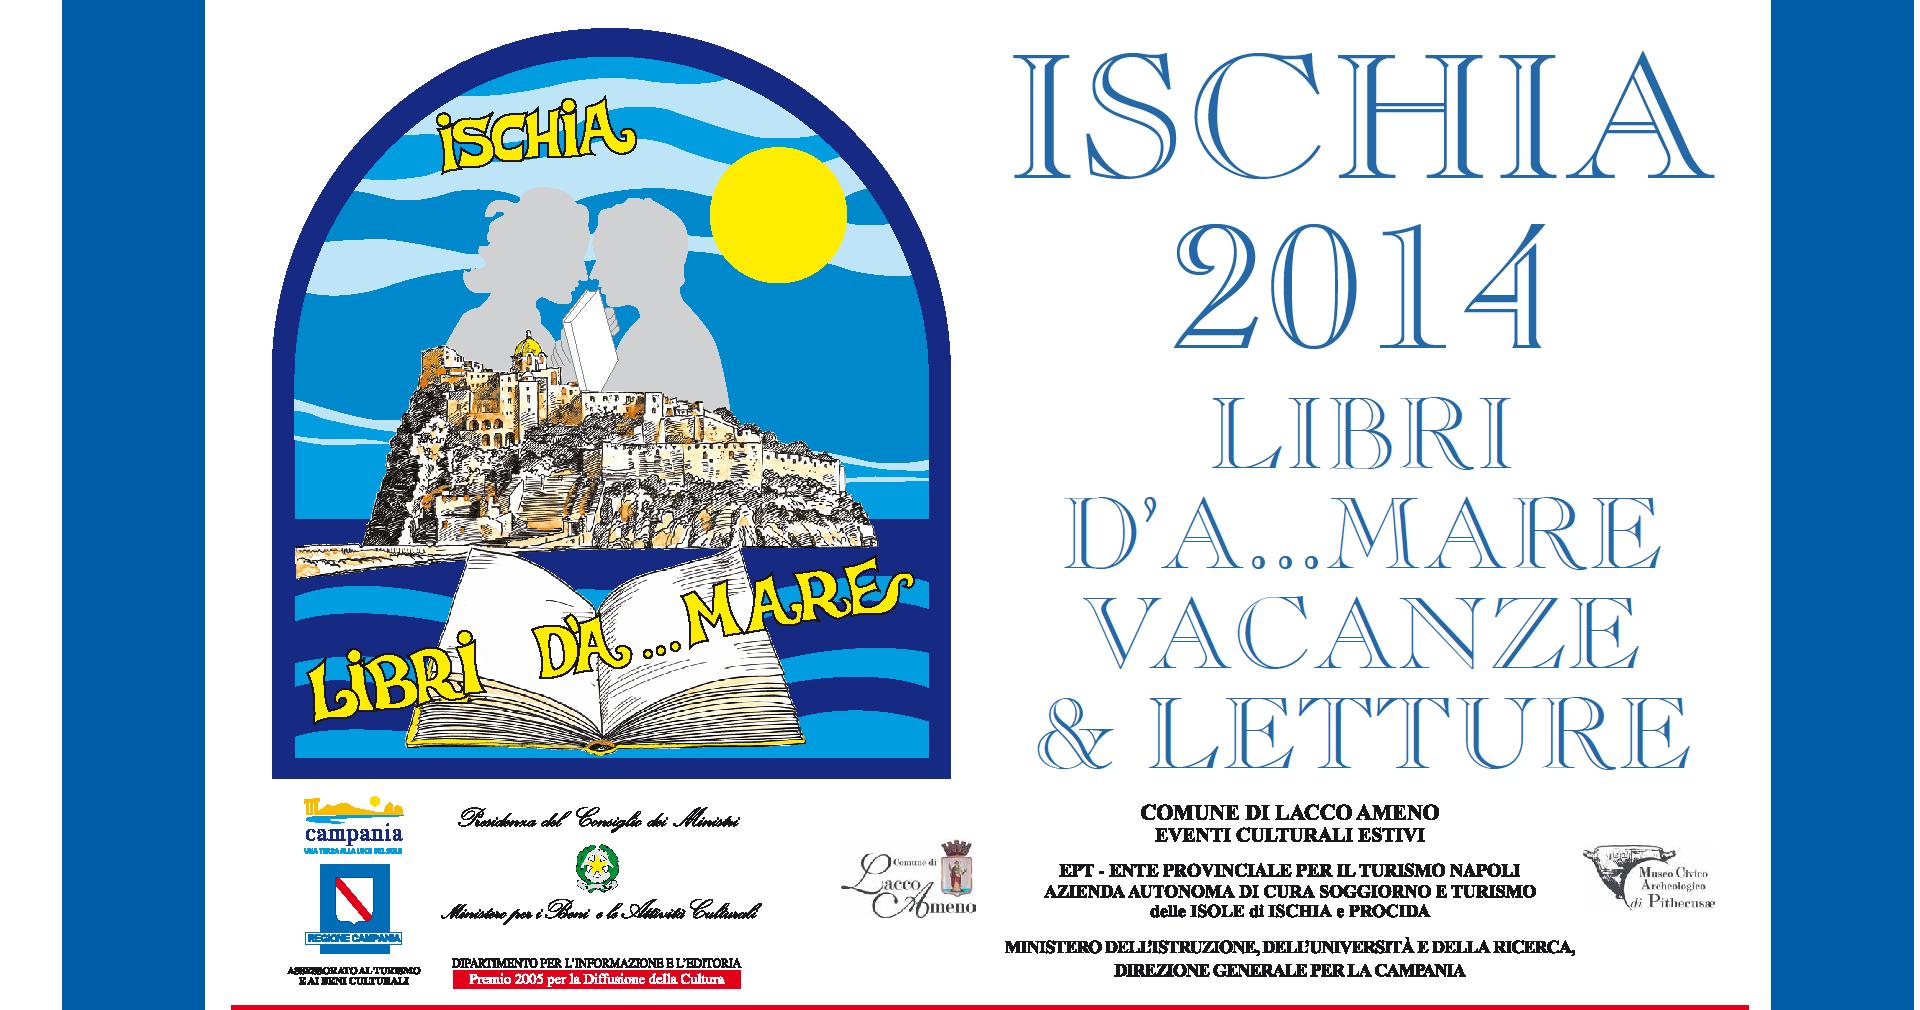 Al via la XIX edizione della rassegna ISCHIA LIBRI D’A…MARE 2014 -A Lacco Ameno d’Ischia Dal 29 Luglio al 25 Agosto 2014